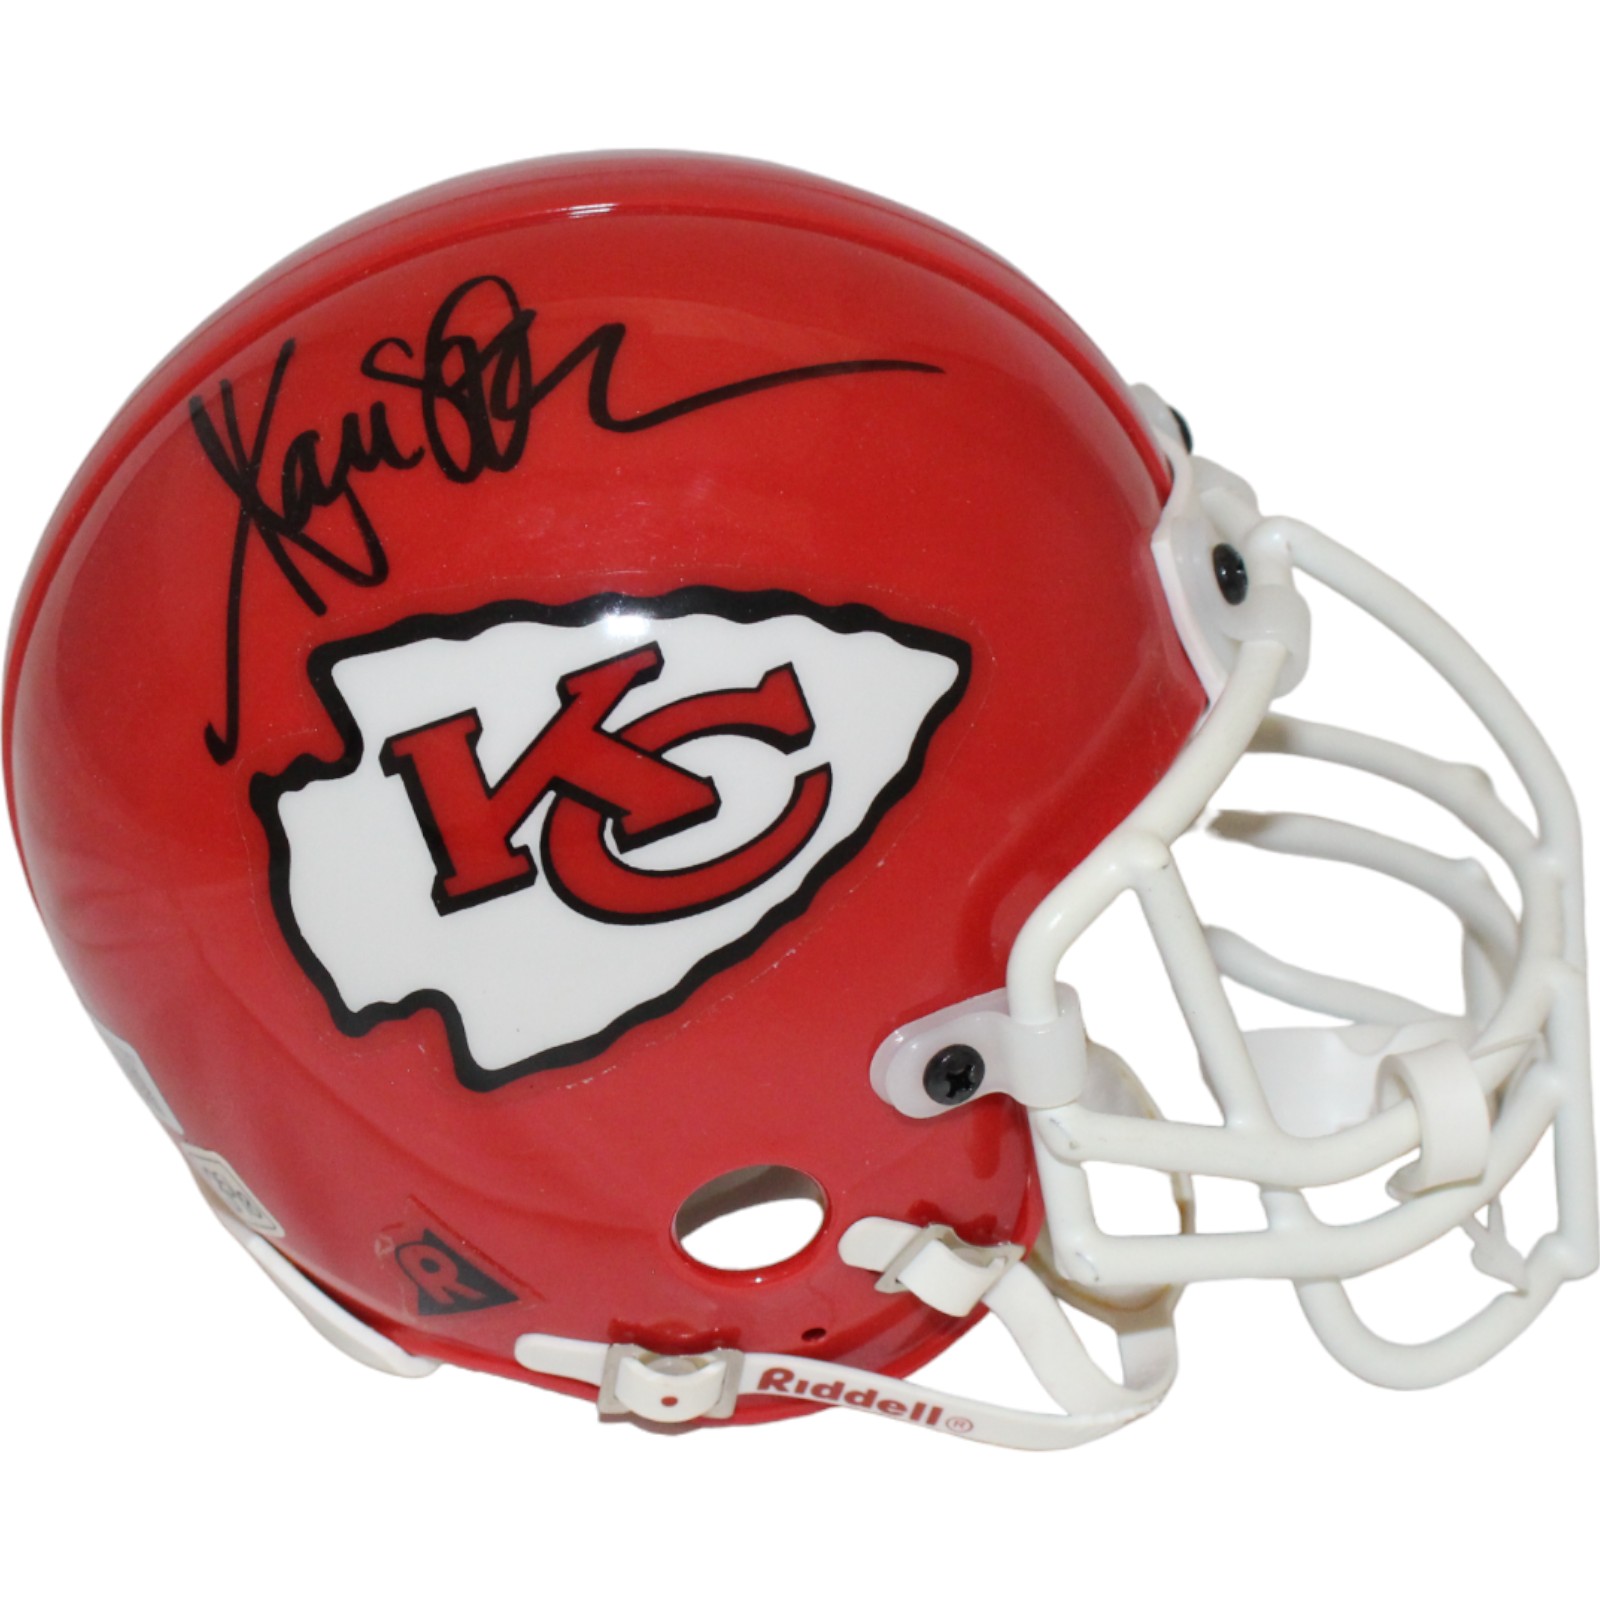 Marcus Allen Signed Kansas City Chiefs VSR4 Authentic Mini Helmet BAS 44151